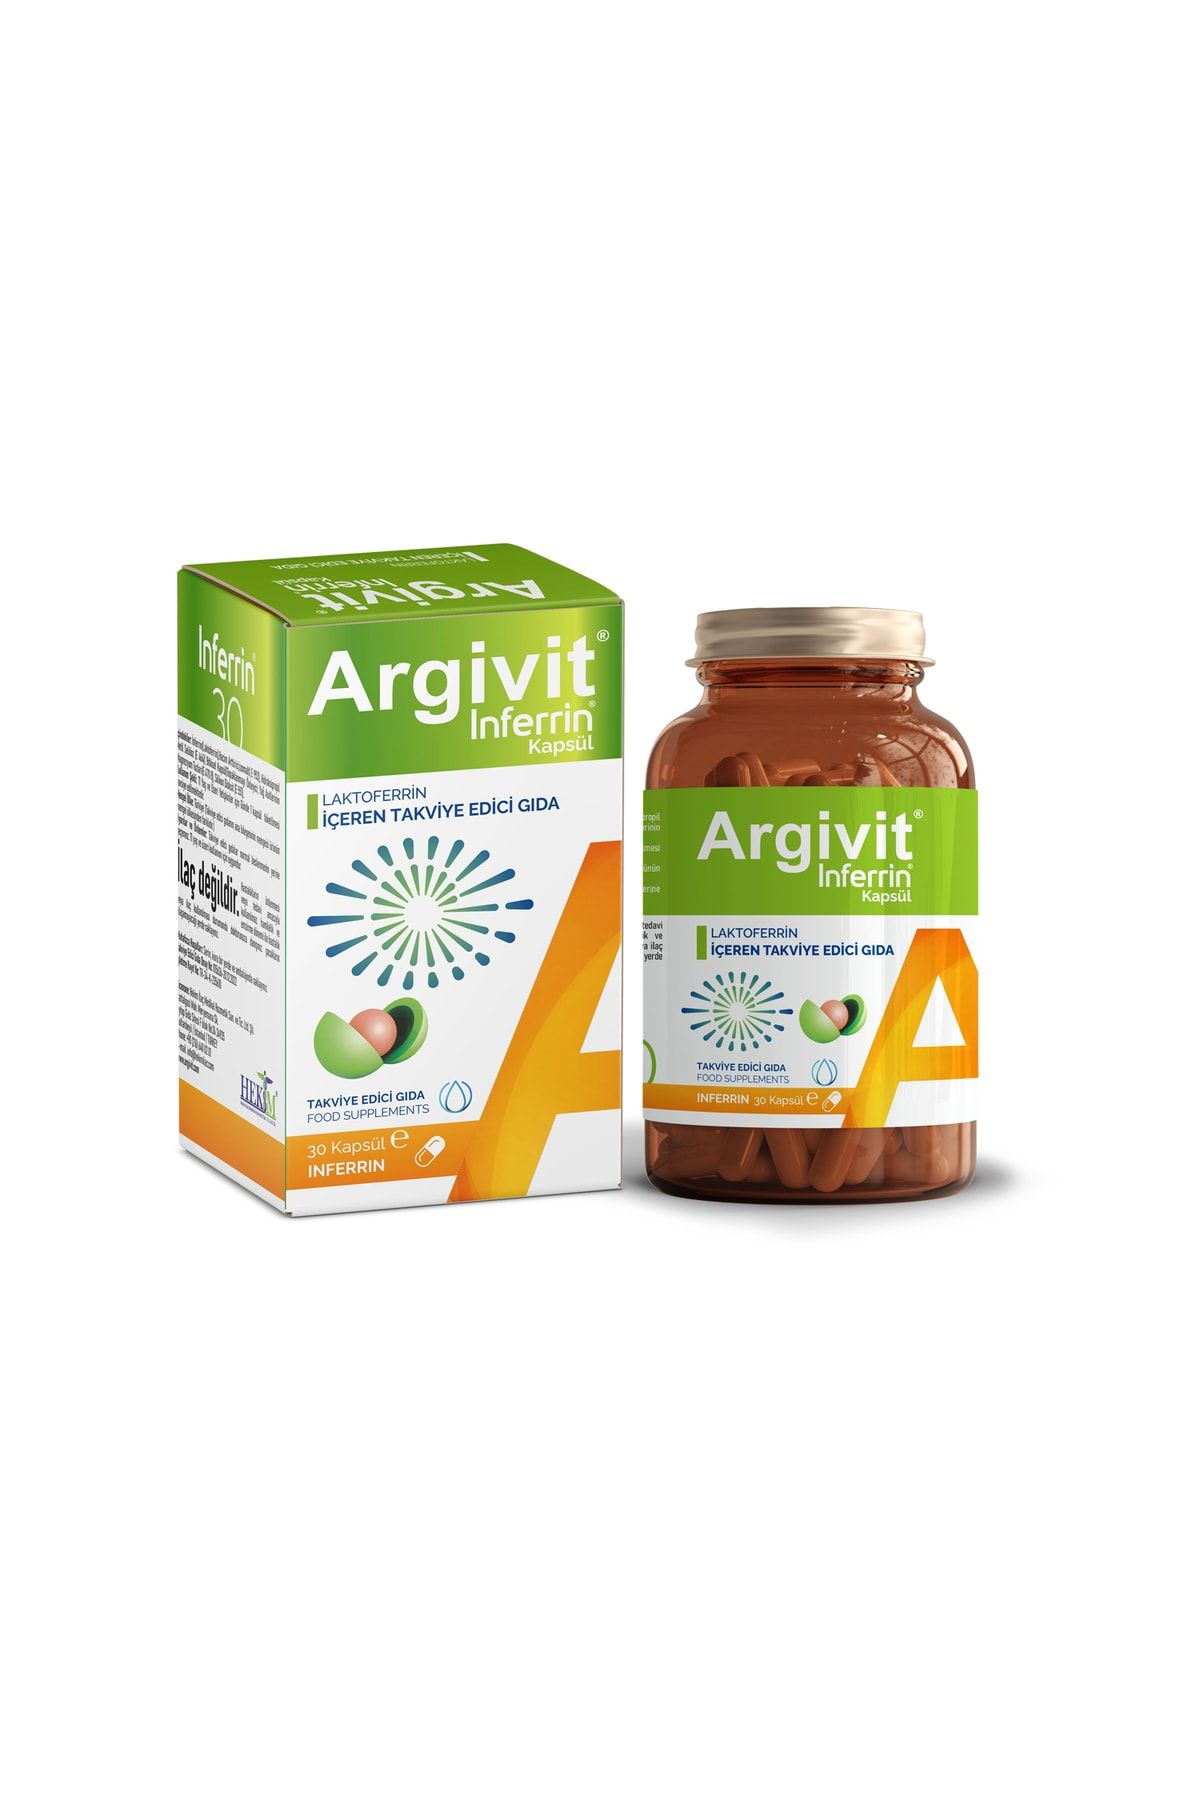 Argivit Inferrin Lactoferrin - Laktoferrin Içeren Takviye Edici Gıda 30 Kapsül